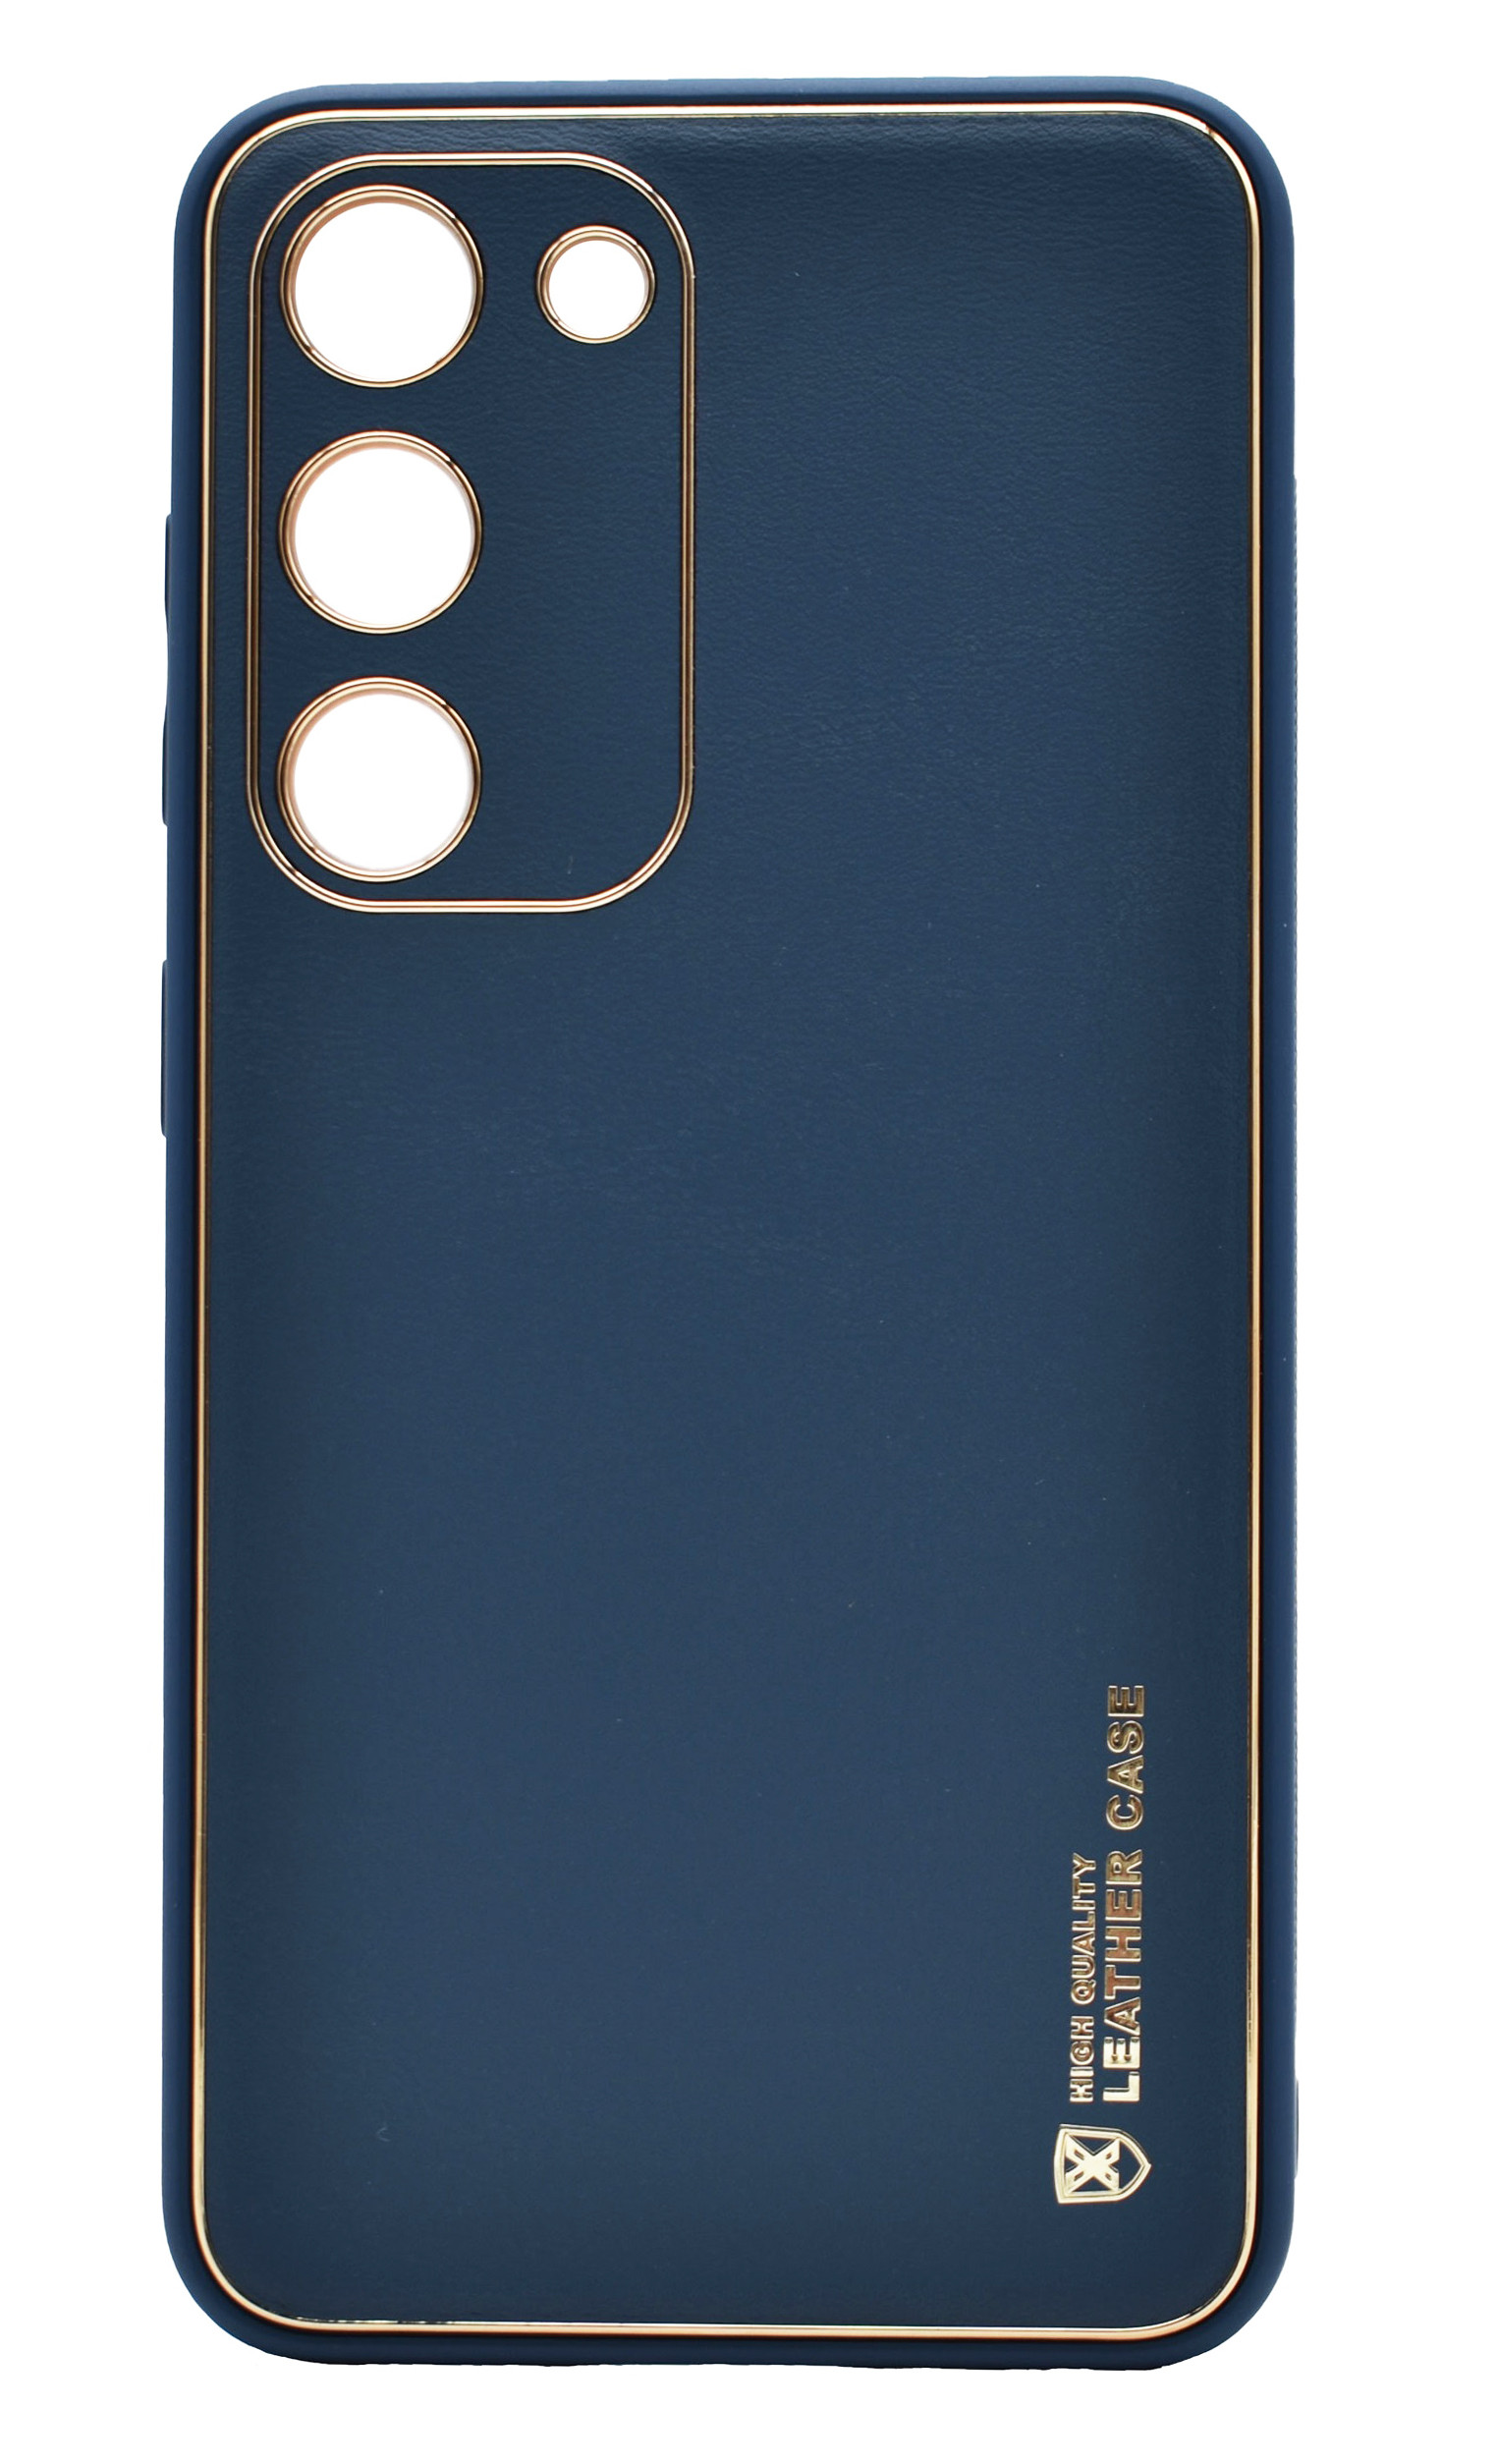 Husa eleganta din piele ecologica pentru Samsung Galaxy A22 5G cu accente aurii, Albastru inchis